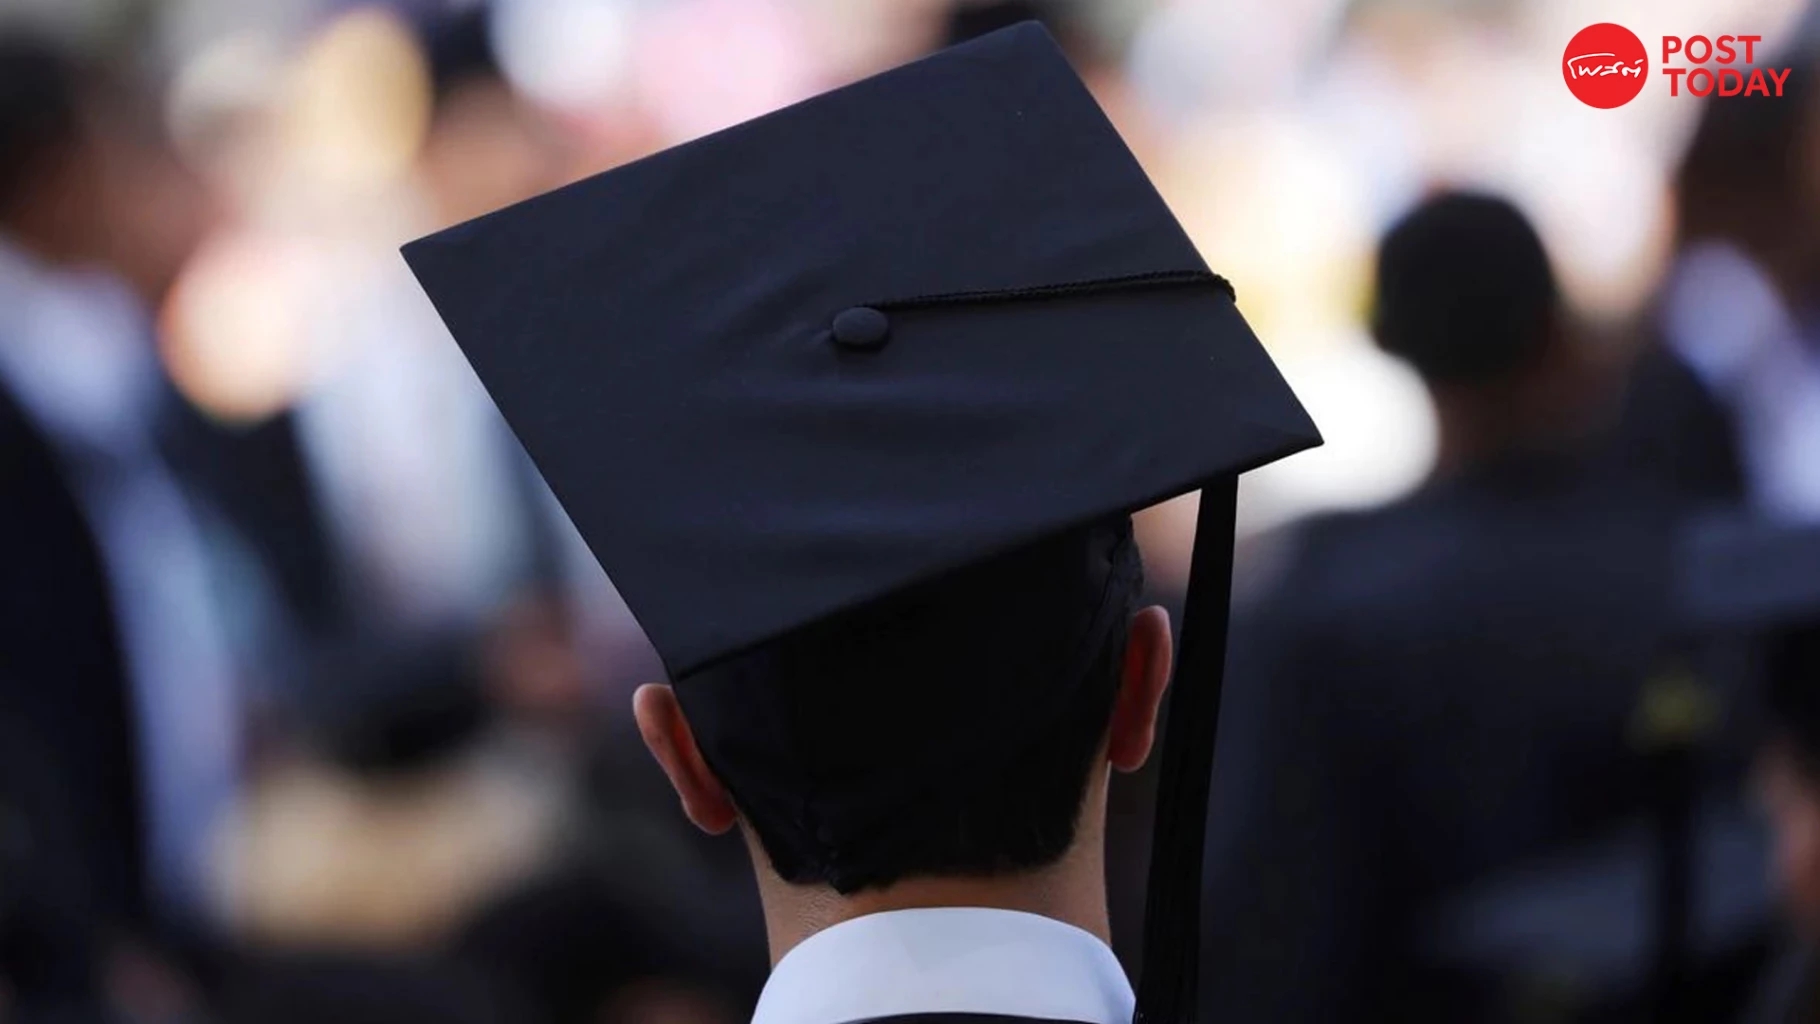 ศาลสหรัฐสั่งให้หยุดรับคำขอยกเลิกหนี้การศึกษา